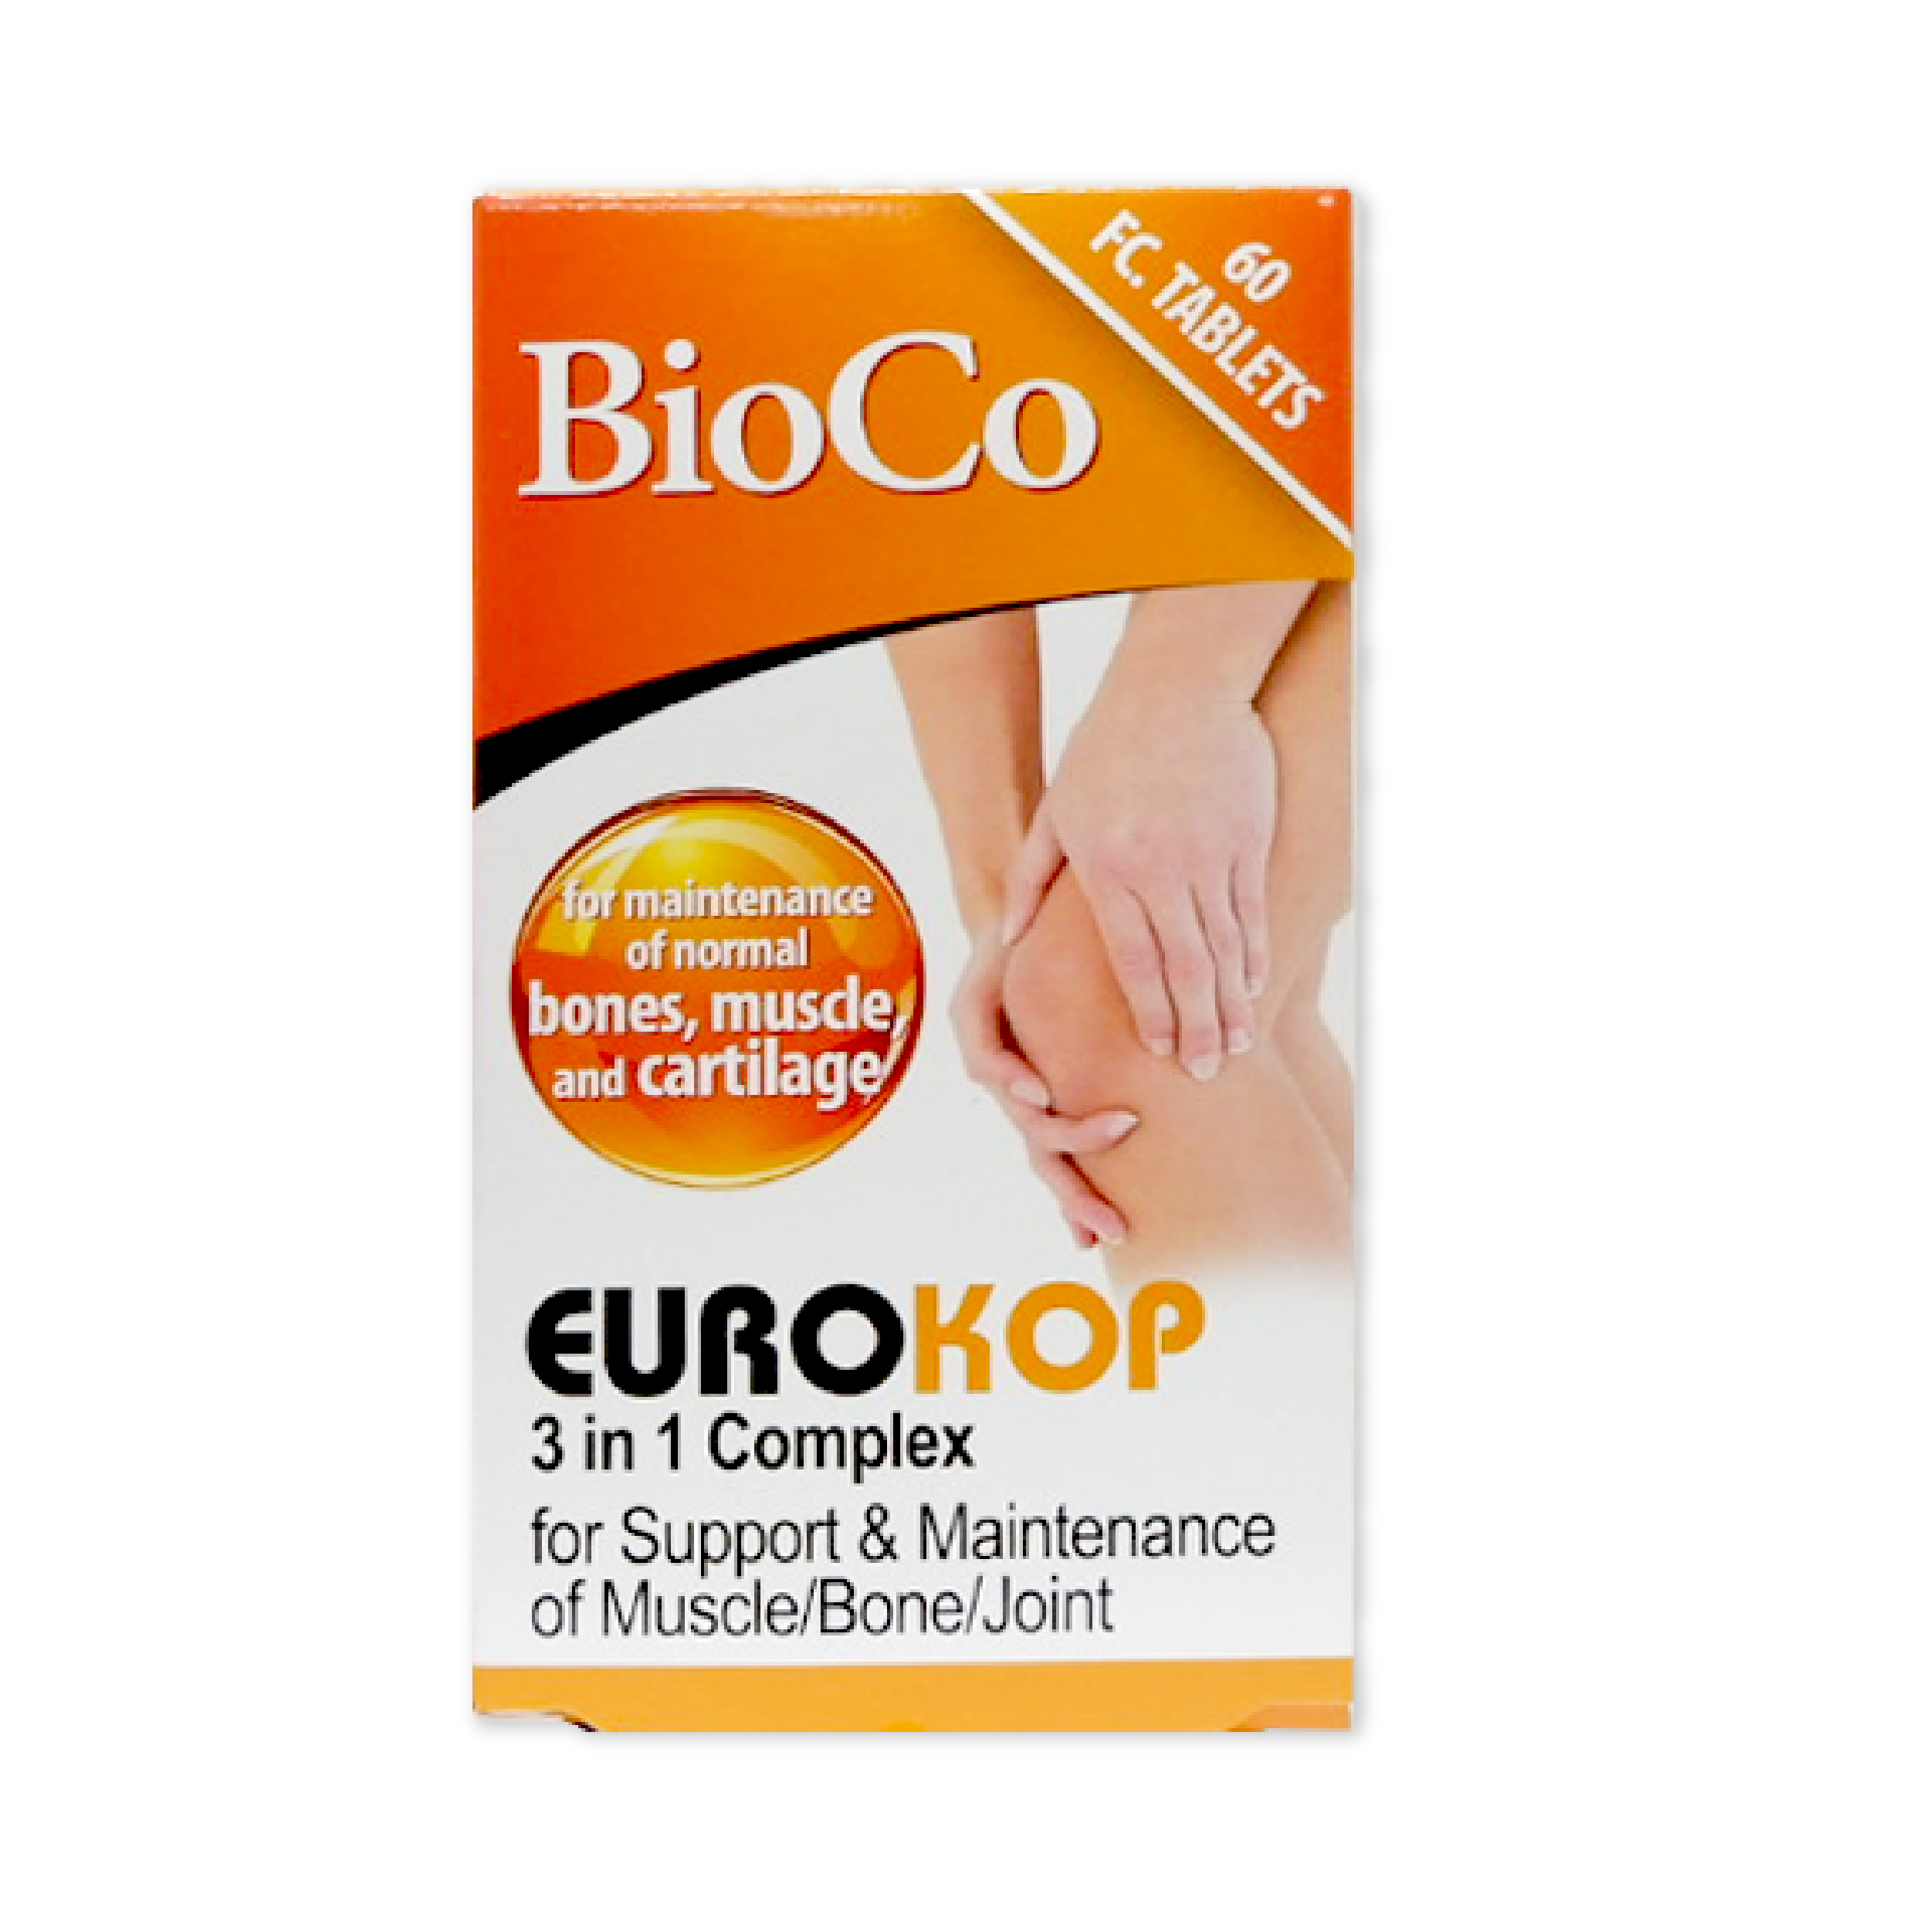 [Glucosamin 500] BioCo Eurokop 3 in 1 complex (Hộp 60 viên 120 viên) - Giảm đau khớp nhanh, chắc xương, khỏe cơ thumbnail